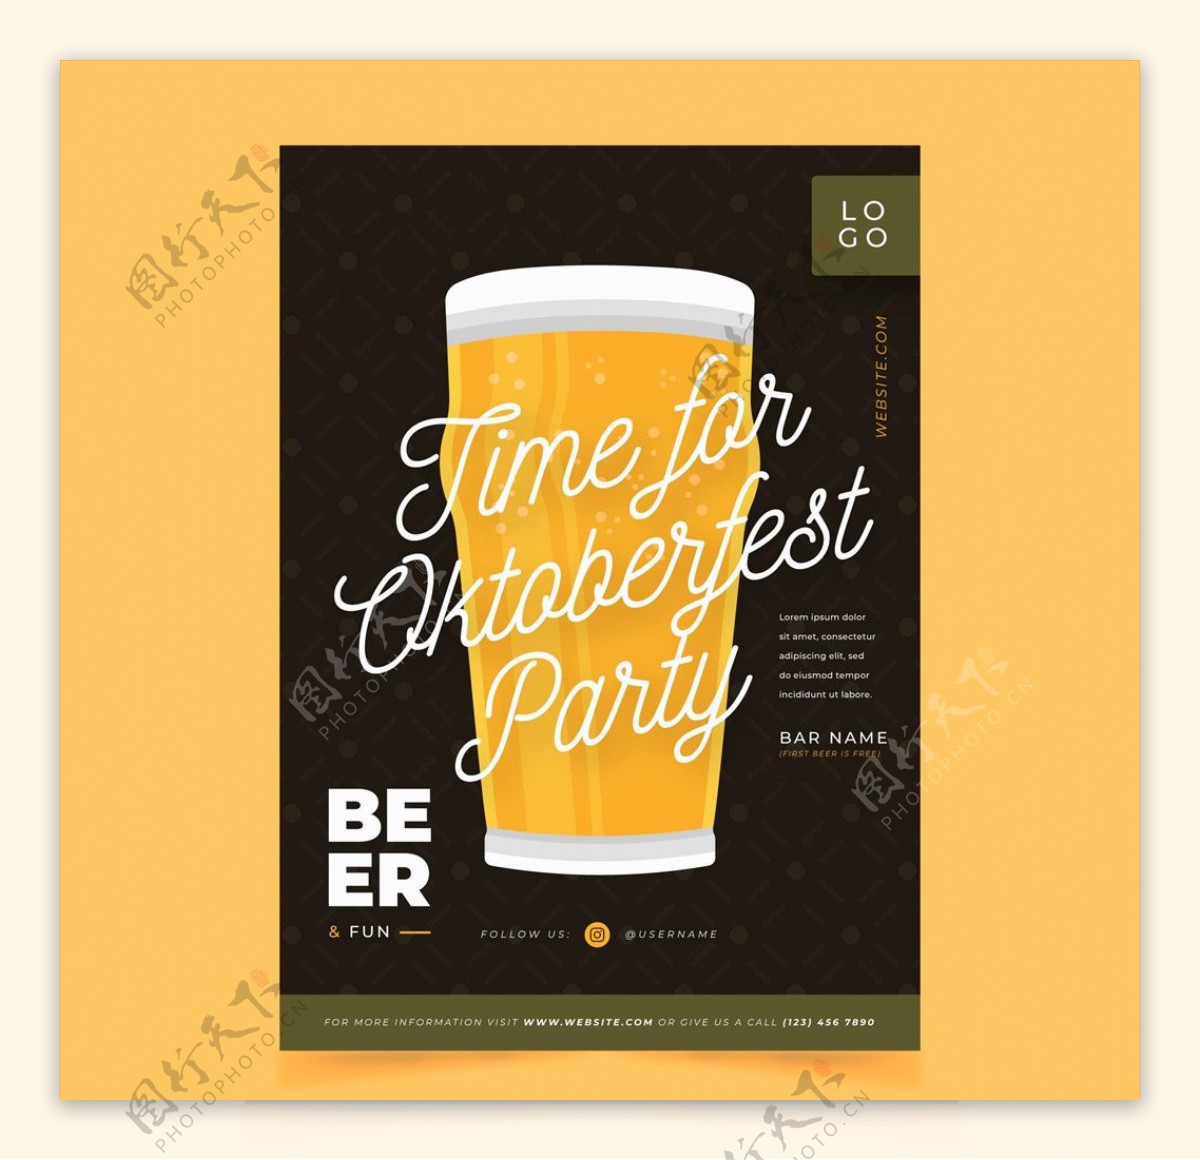 啤酒节海报POP模板设计